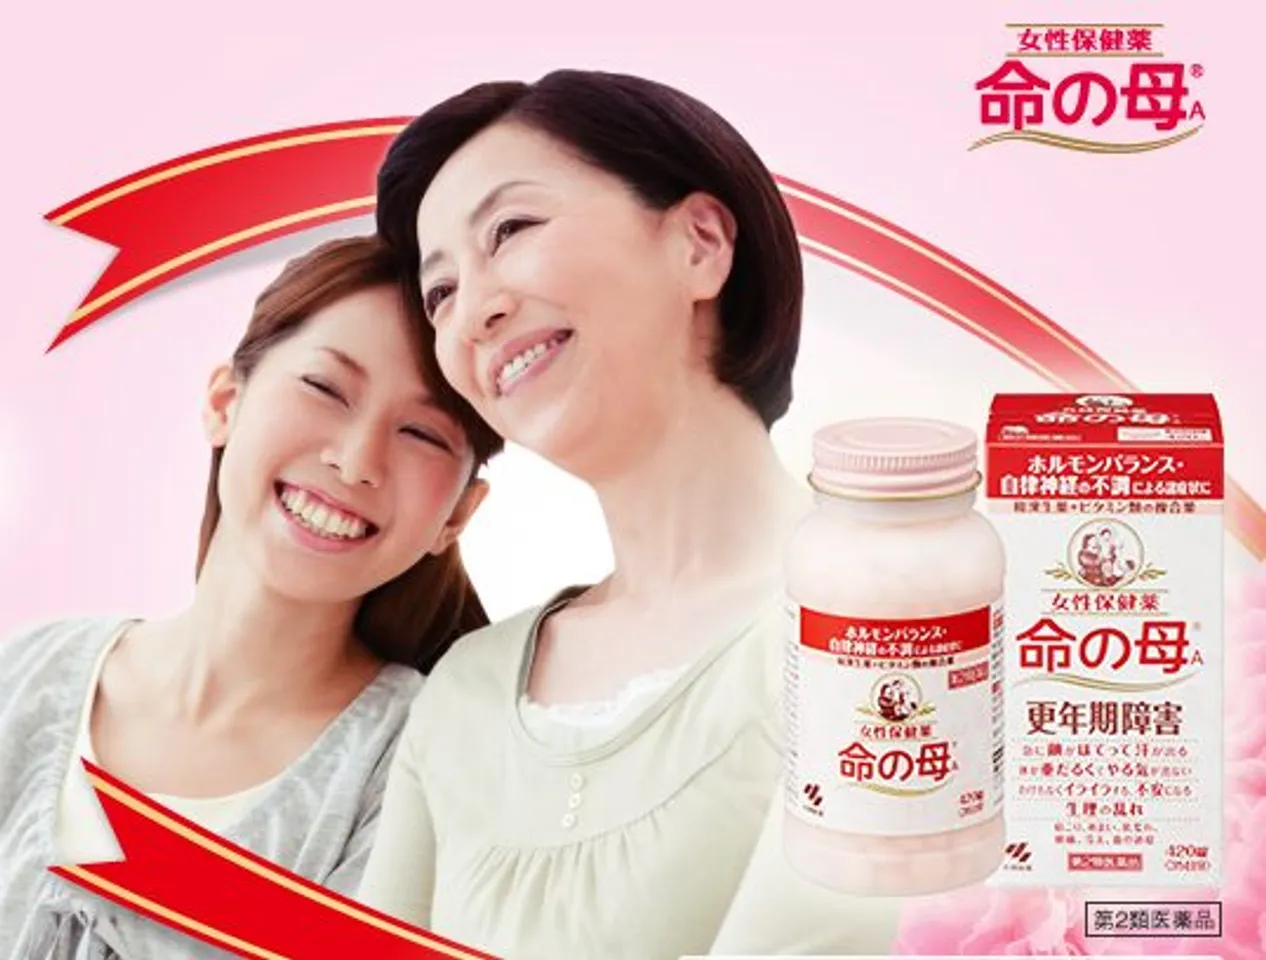 Viên uống Kobayashi cho phụ nữ tiền mãn kinh hỗ trợ chăm sóc sức khỏe nữ hiệu quả